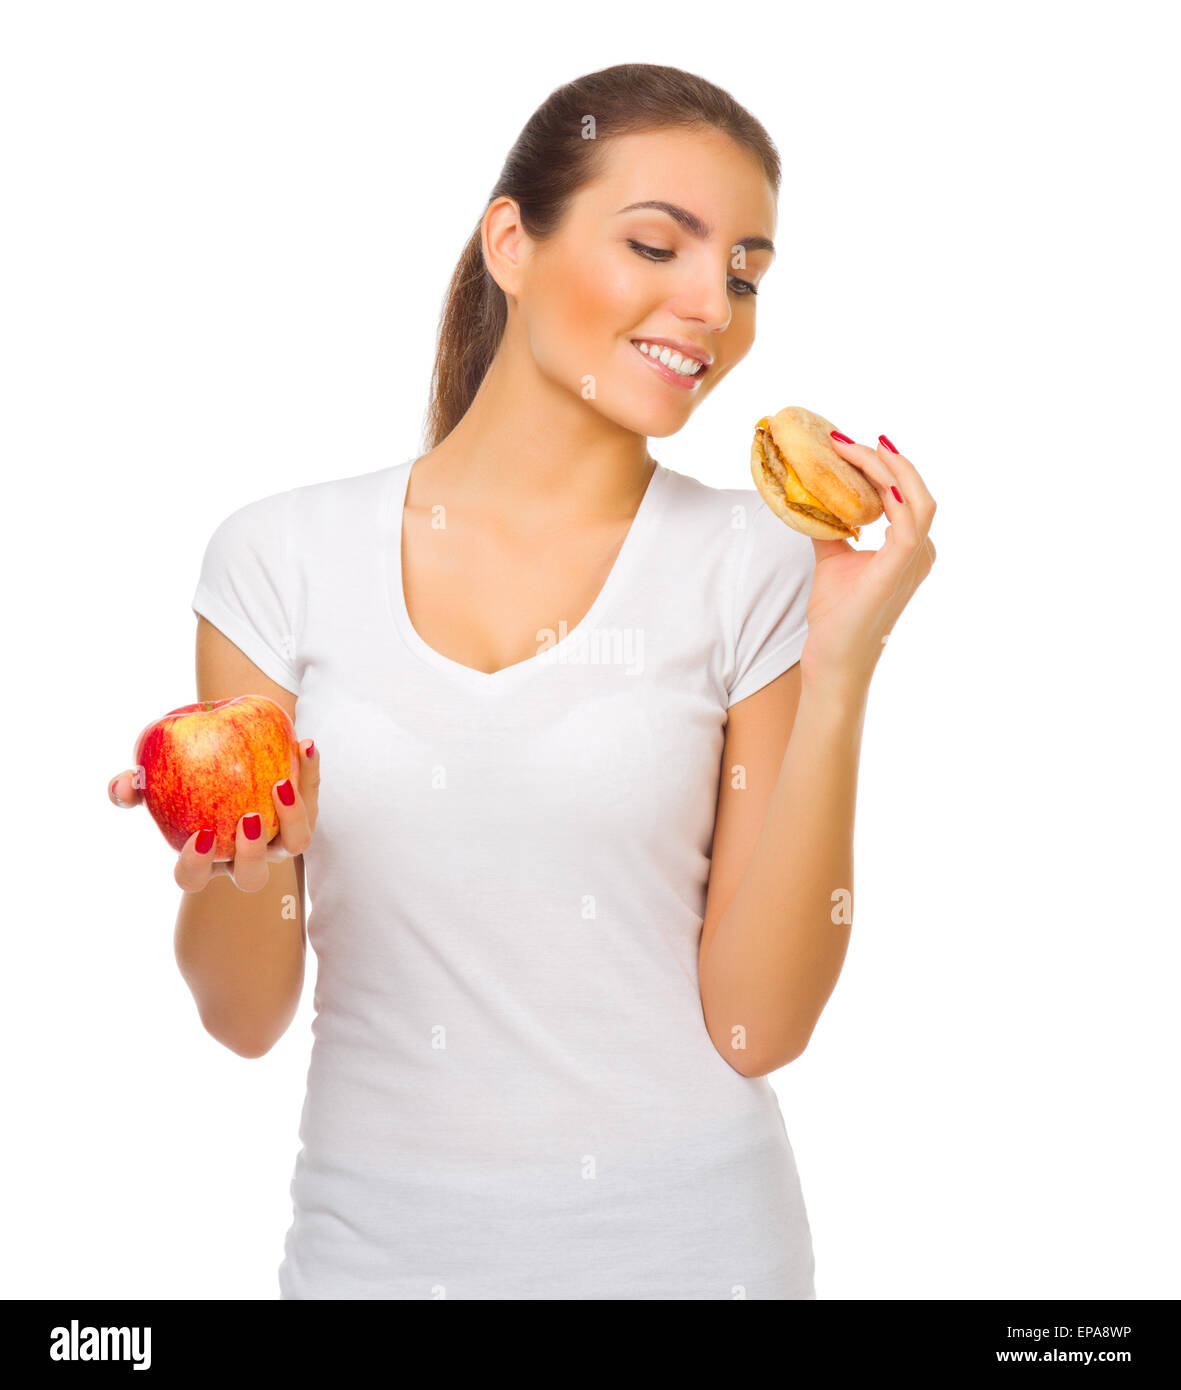 Young smiling girl avec hamburger et isolés d'apple Banque D'Images